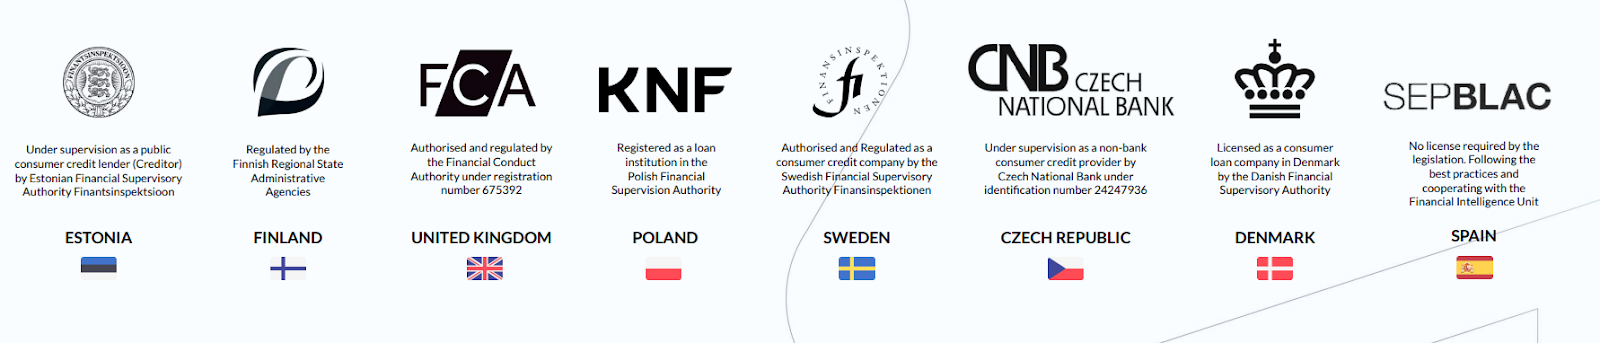 Die Creditstar Gruppe ist in allen acht Ländern reguliert, Monefit selbst jedoch nicht. 